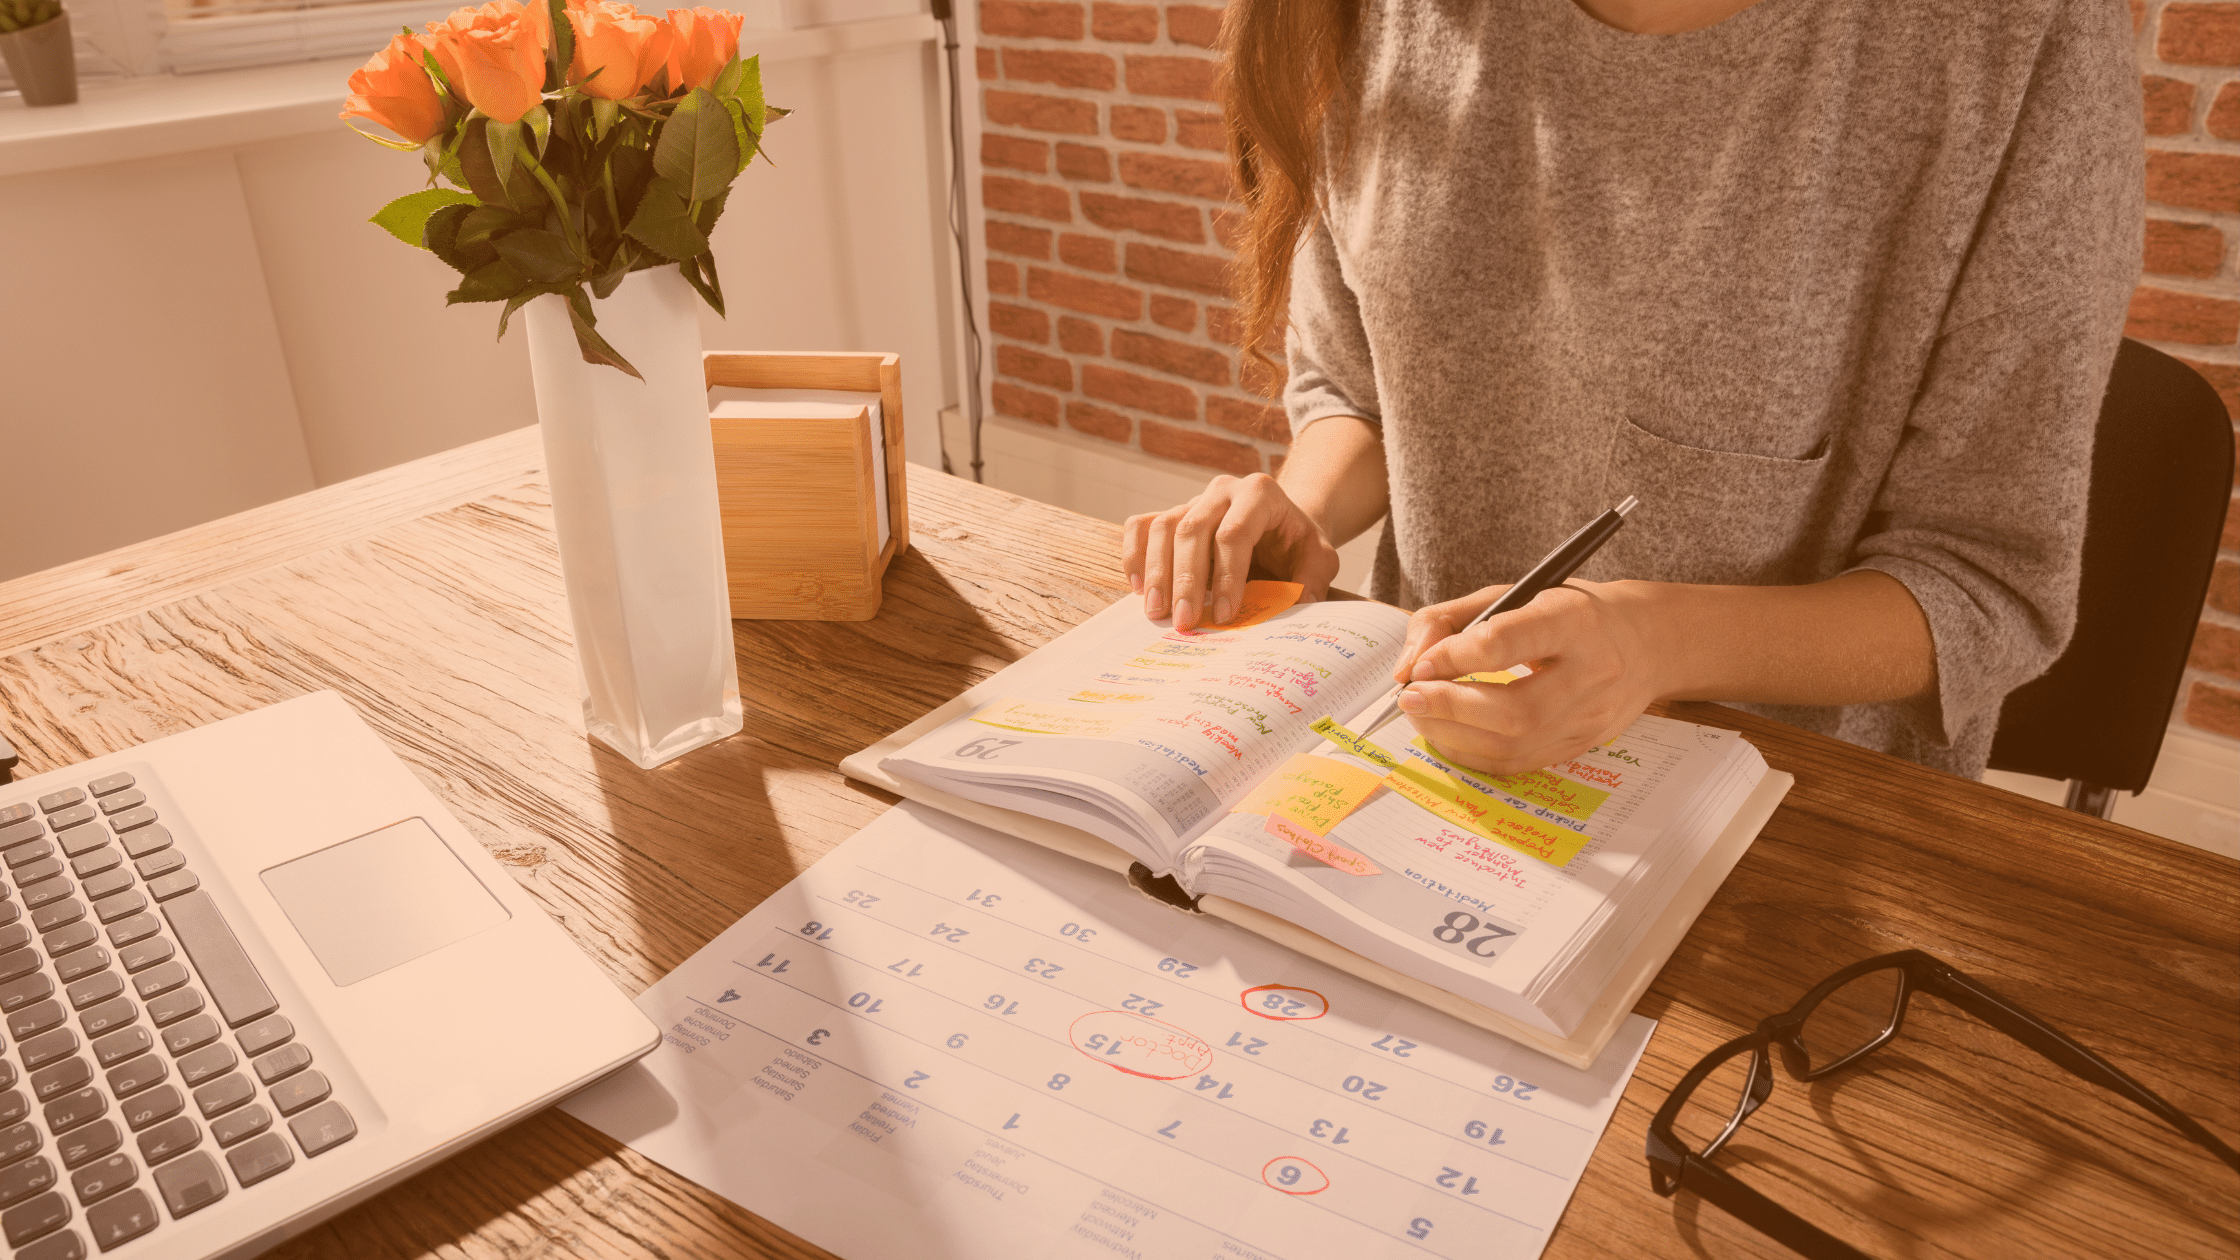 Przy biurku siedzi kobieta planująca harmonogram. Przed nią leży laptop oraz kalendarz miesięczny.